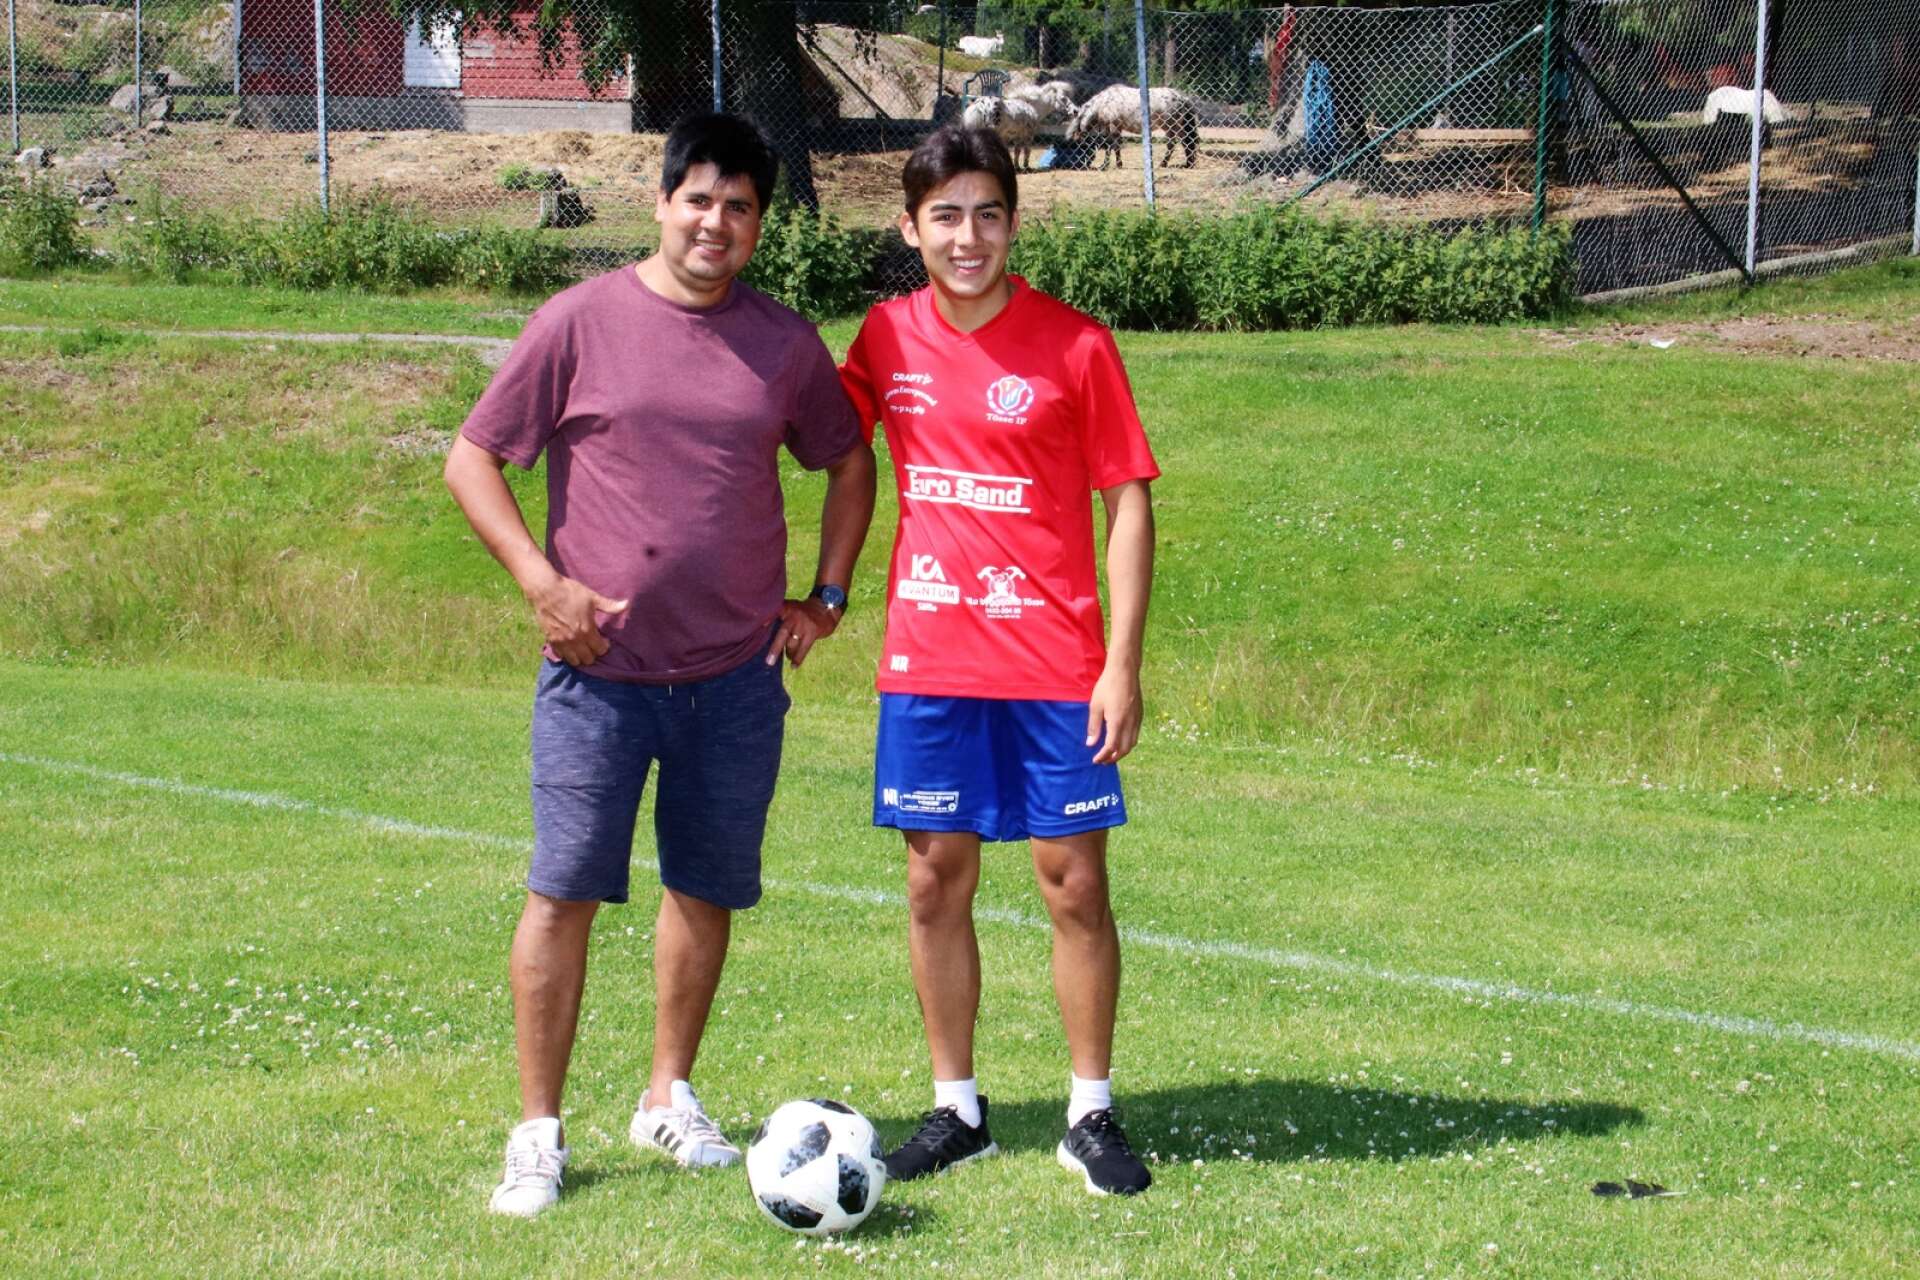 Morbror Sergio Franco har hjälpt Nahuel Jeremias Romero att komma igång med fotbollen i Tösse IF.